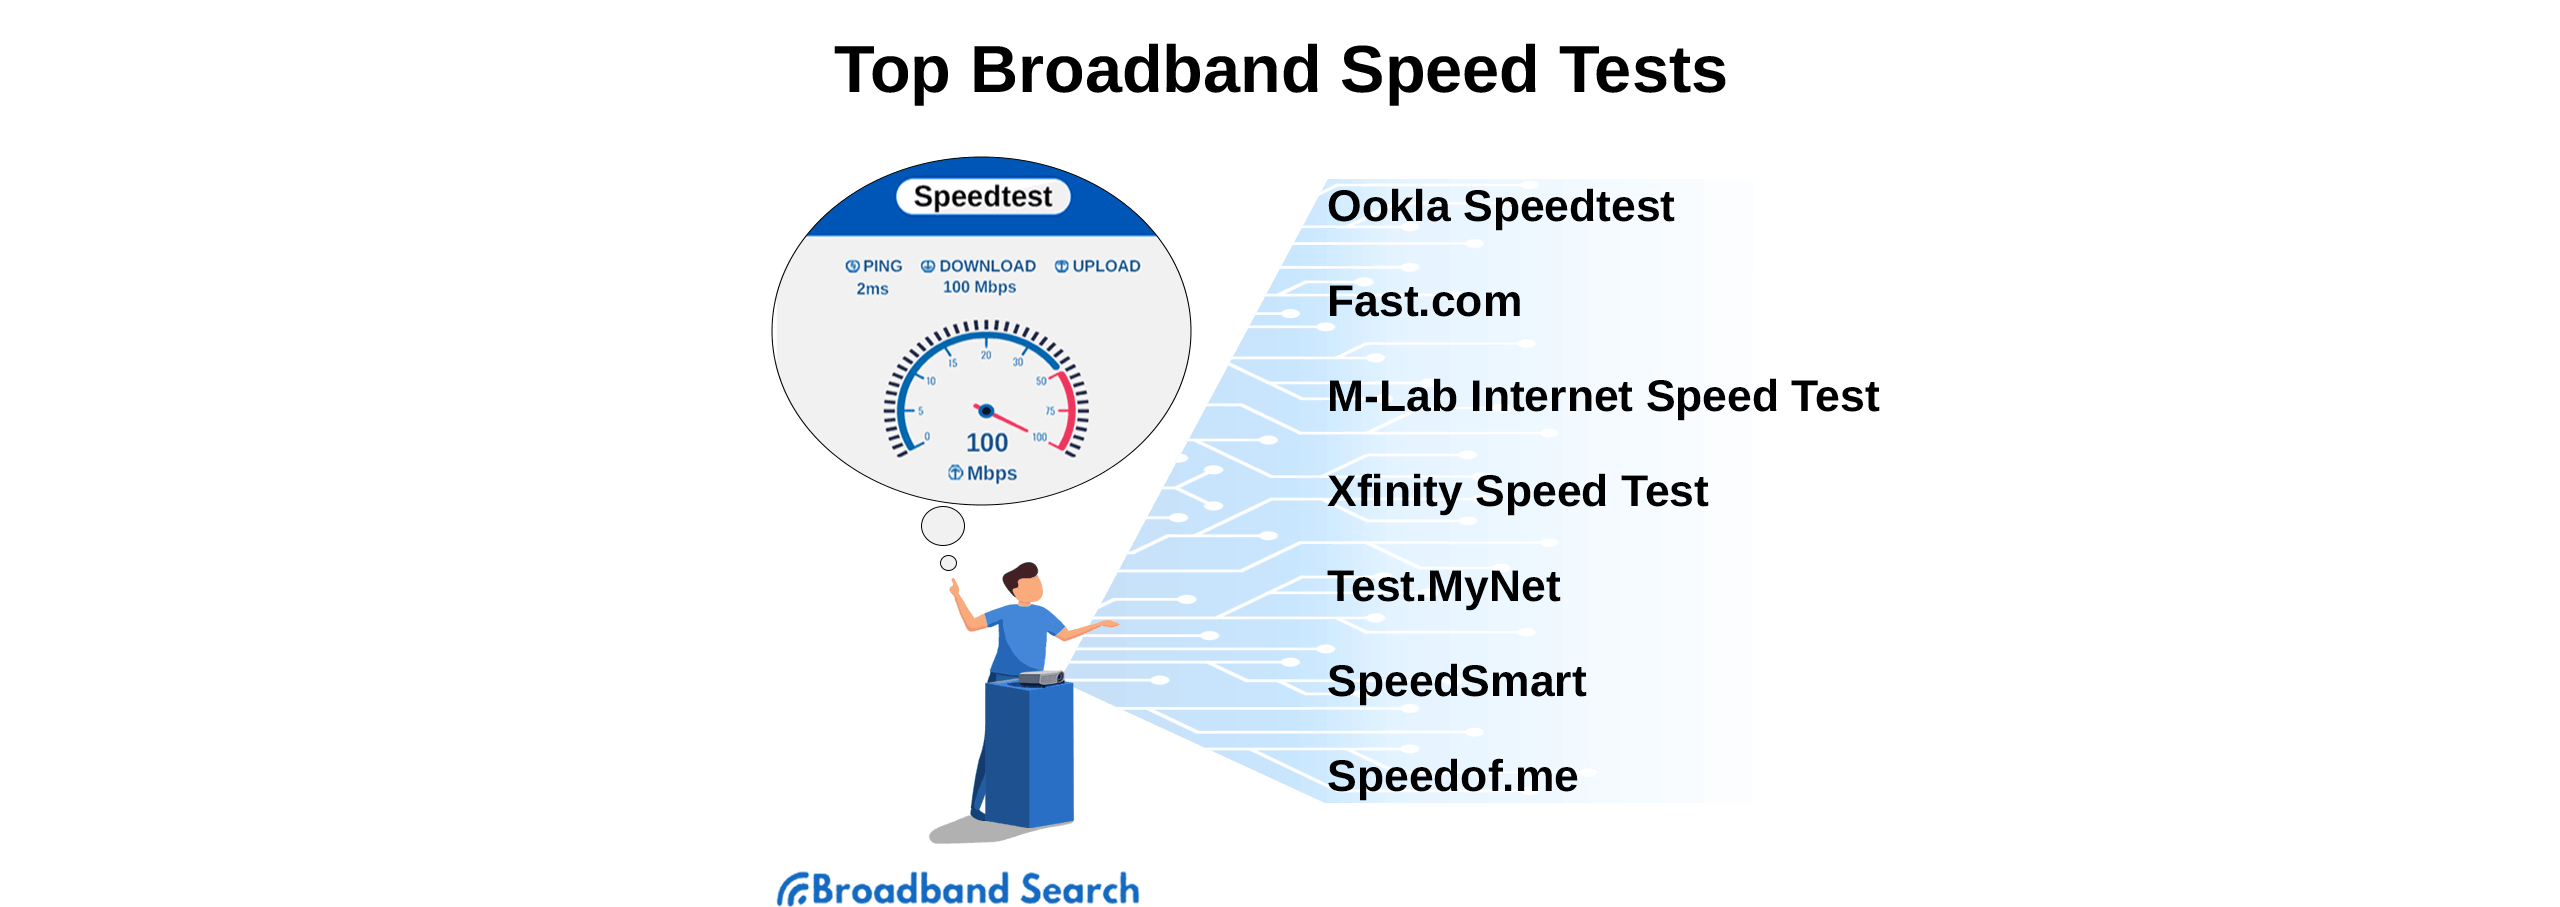 bandwidth speed test cnet